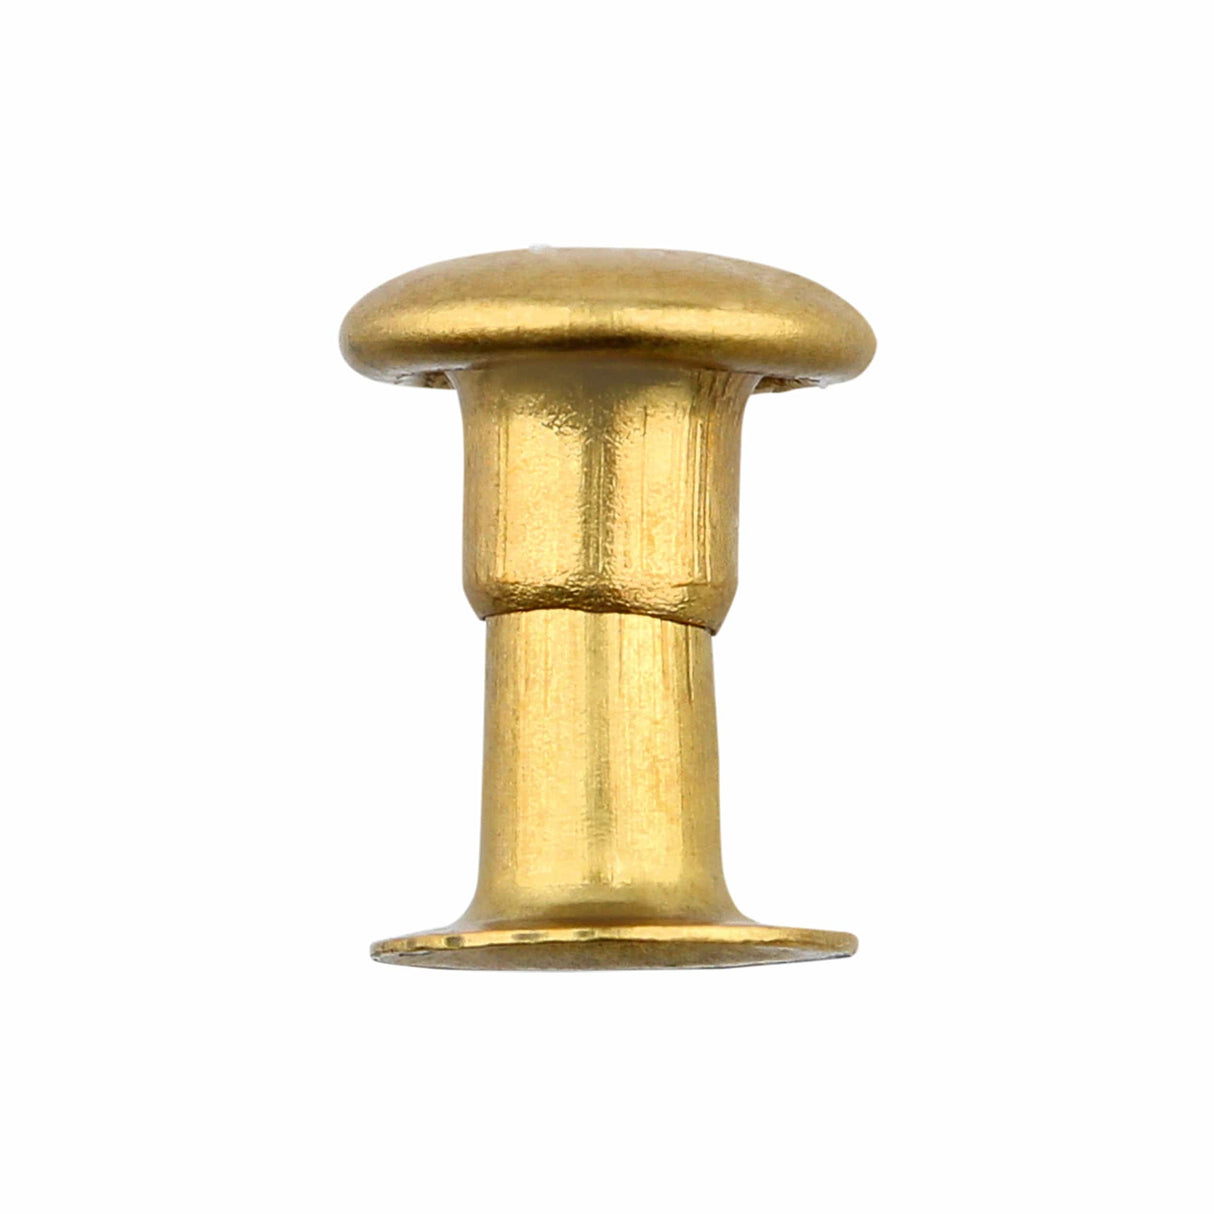 Single Cap Rivet - Antique Brass (1000 pcs)